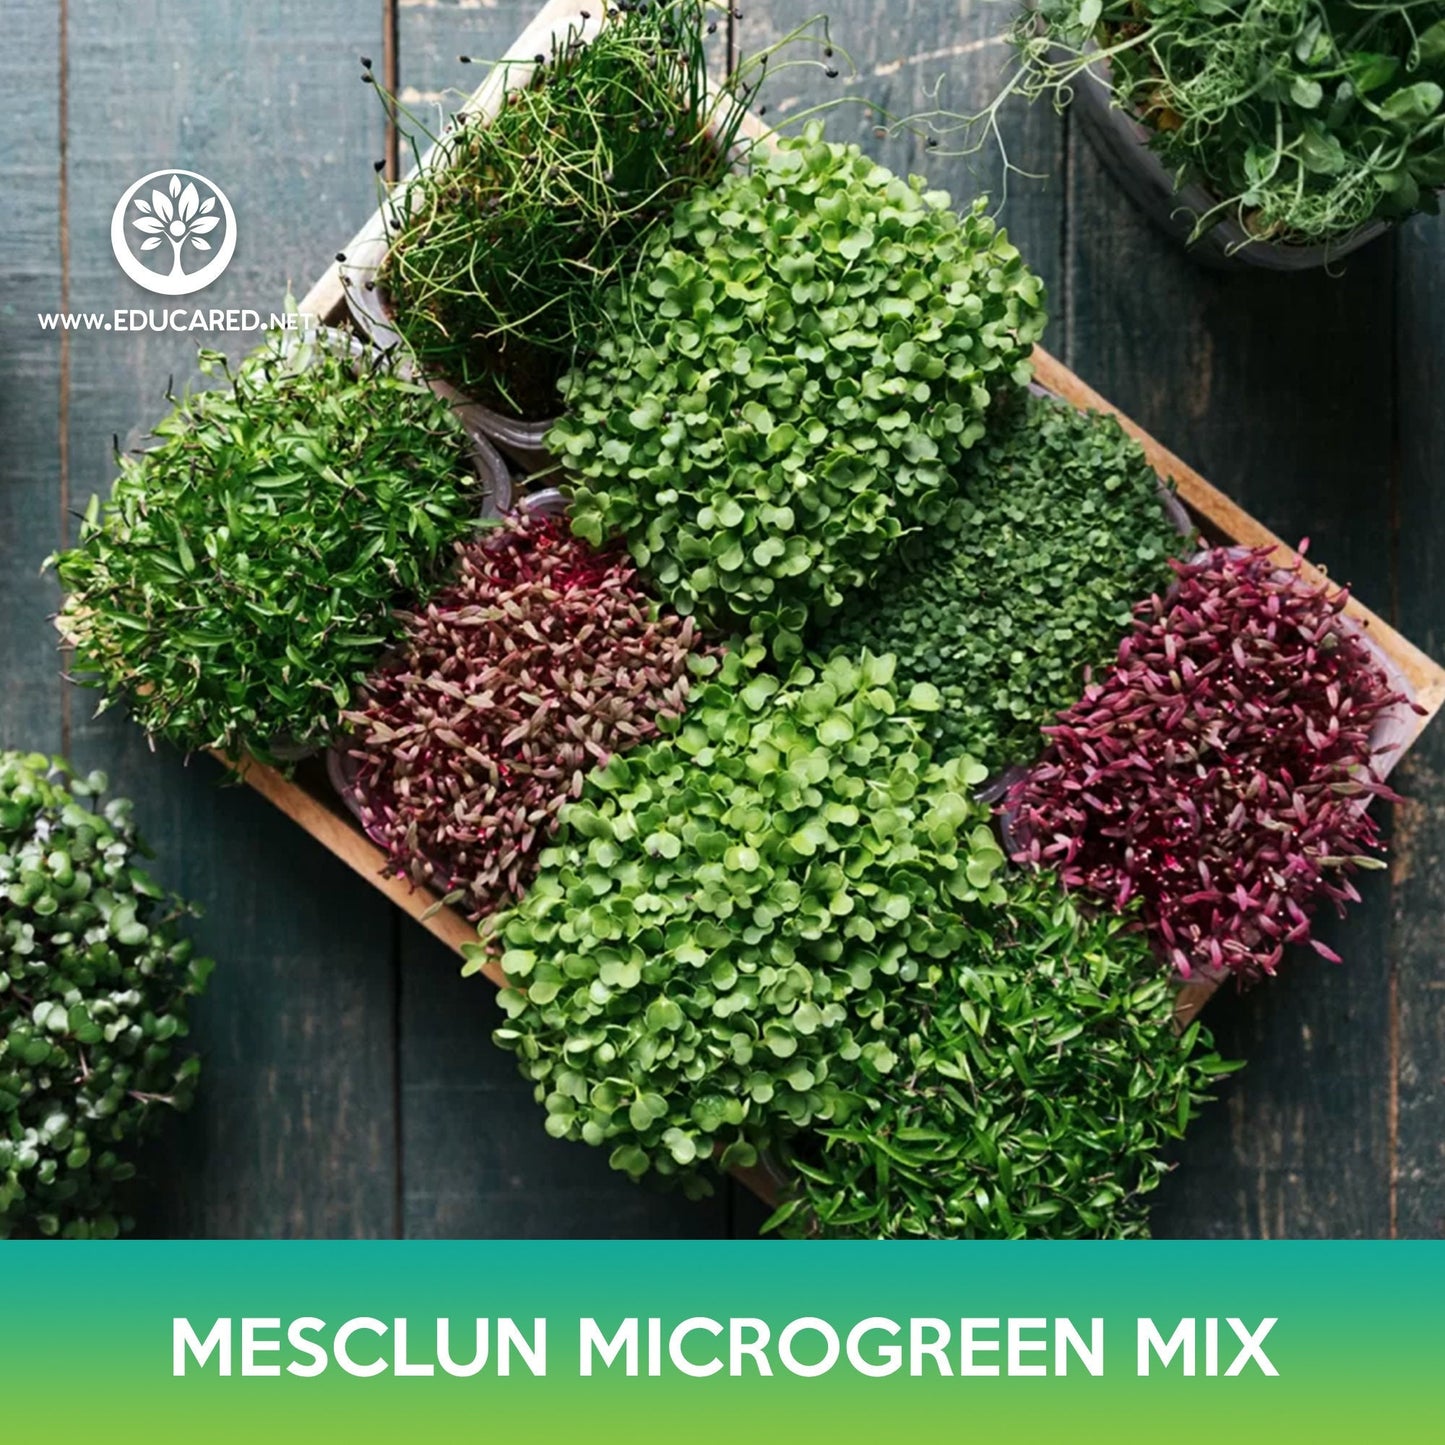 Mesclun Microgreen Mix Seeds